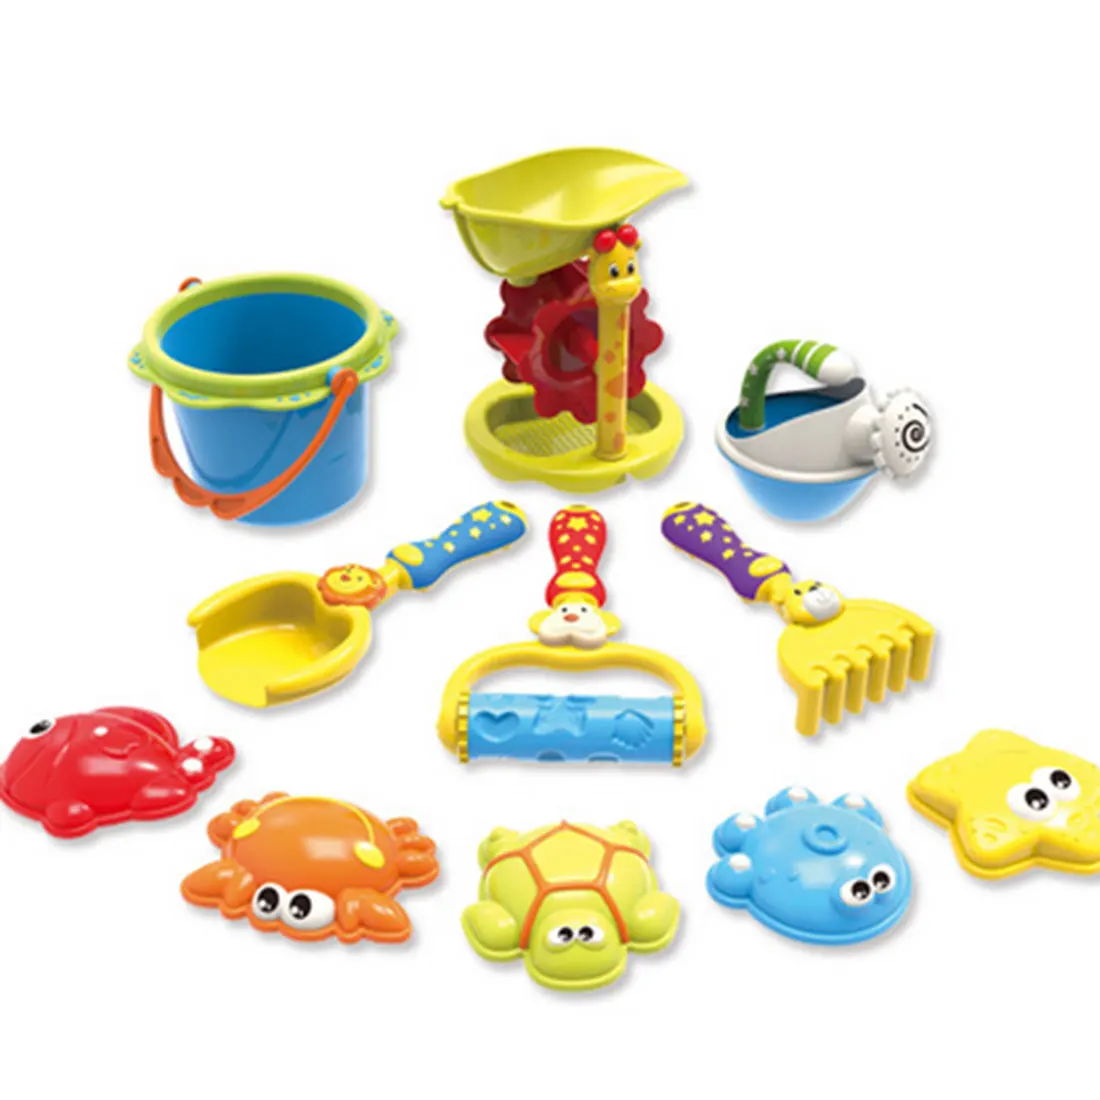 11 шт. пляжный песок набор игрушек песочные часы лопаты лейки Безопасность детей Пластик игрушки-Цвет случайный